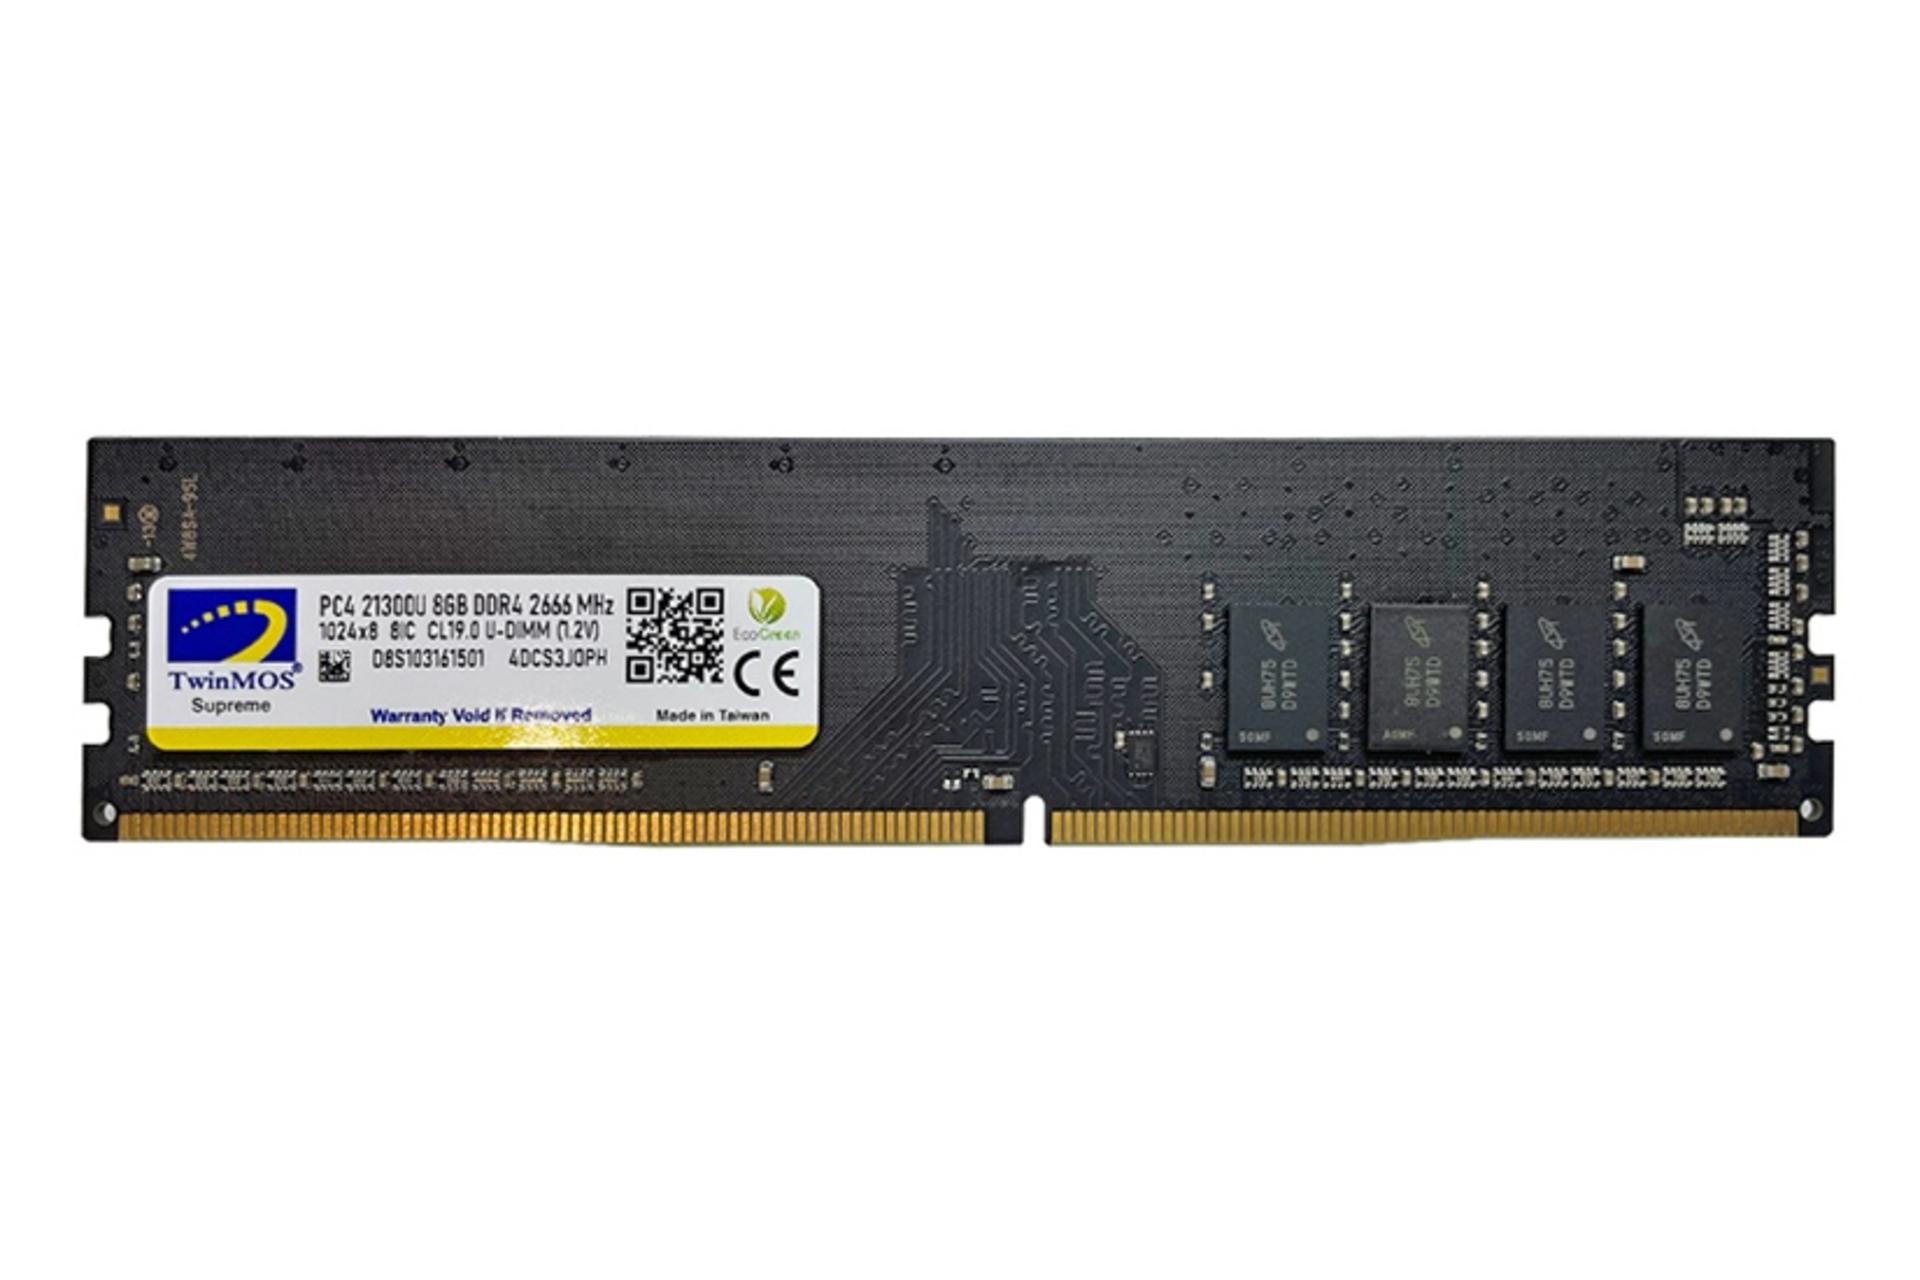 رم توین موس 4DCS3JOPH ظرفیت 8 گیگابایت از نوع DDR4-2666